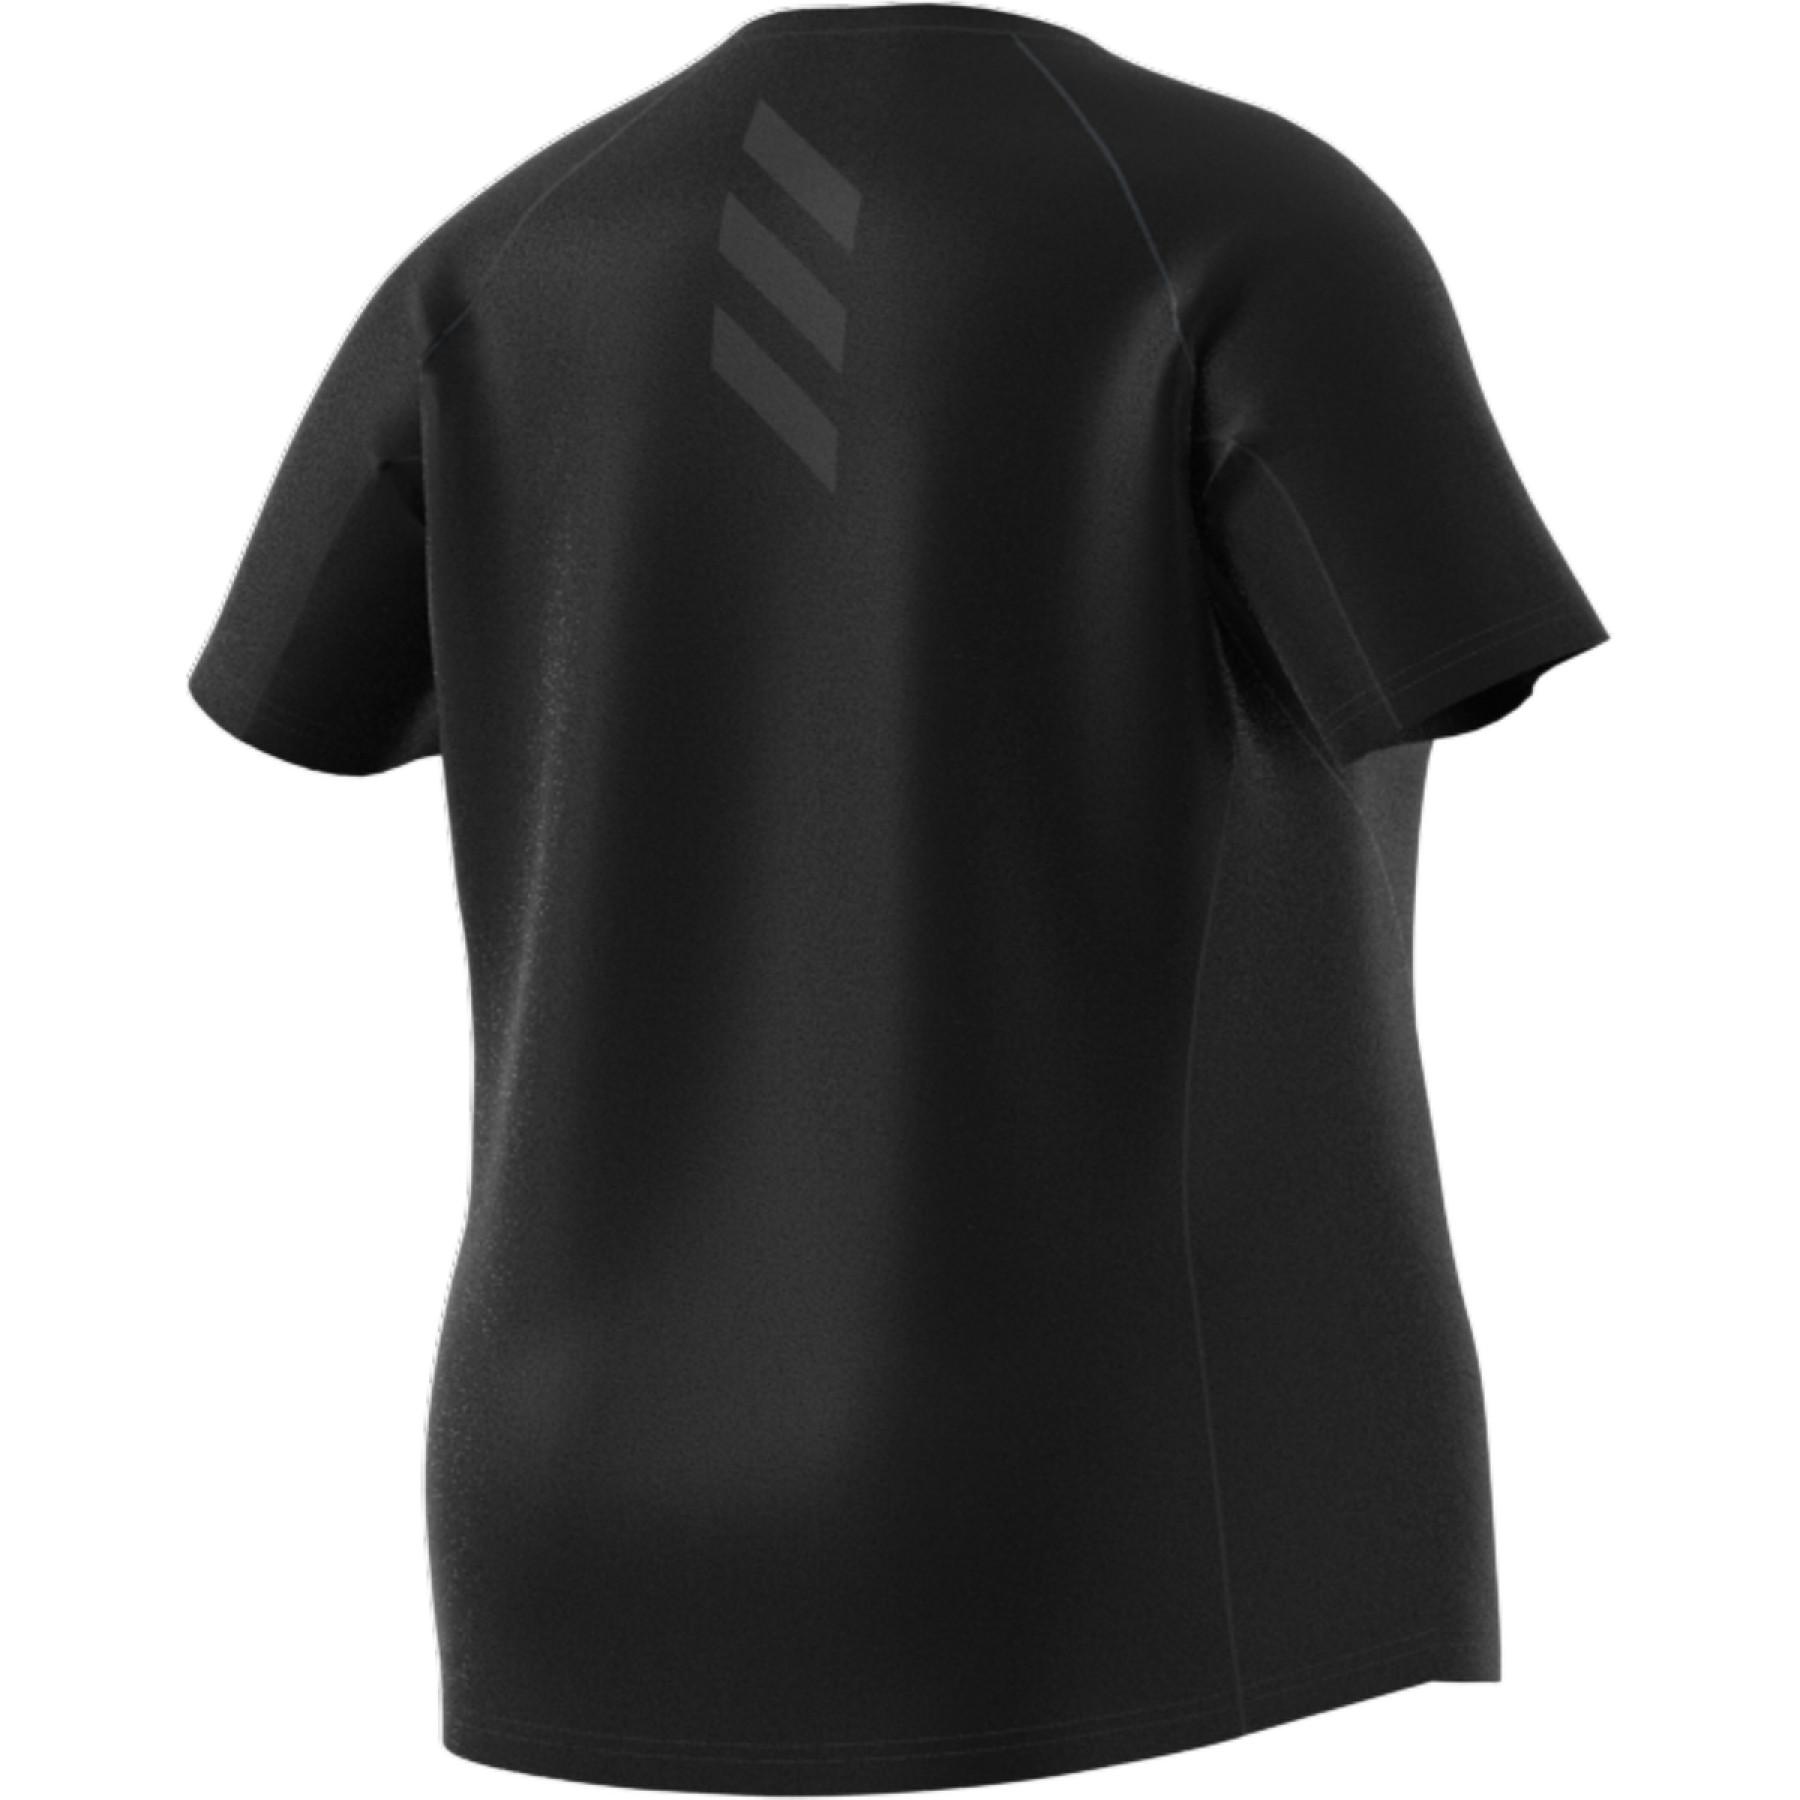 Camiseta feminina adidas Runner Grande Taille